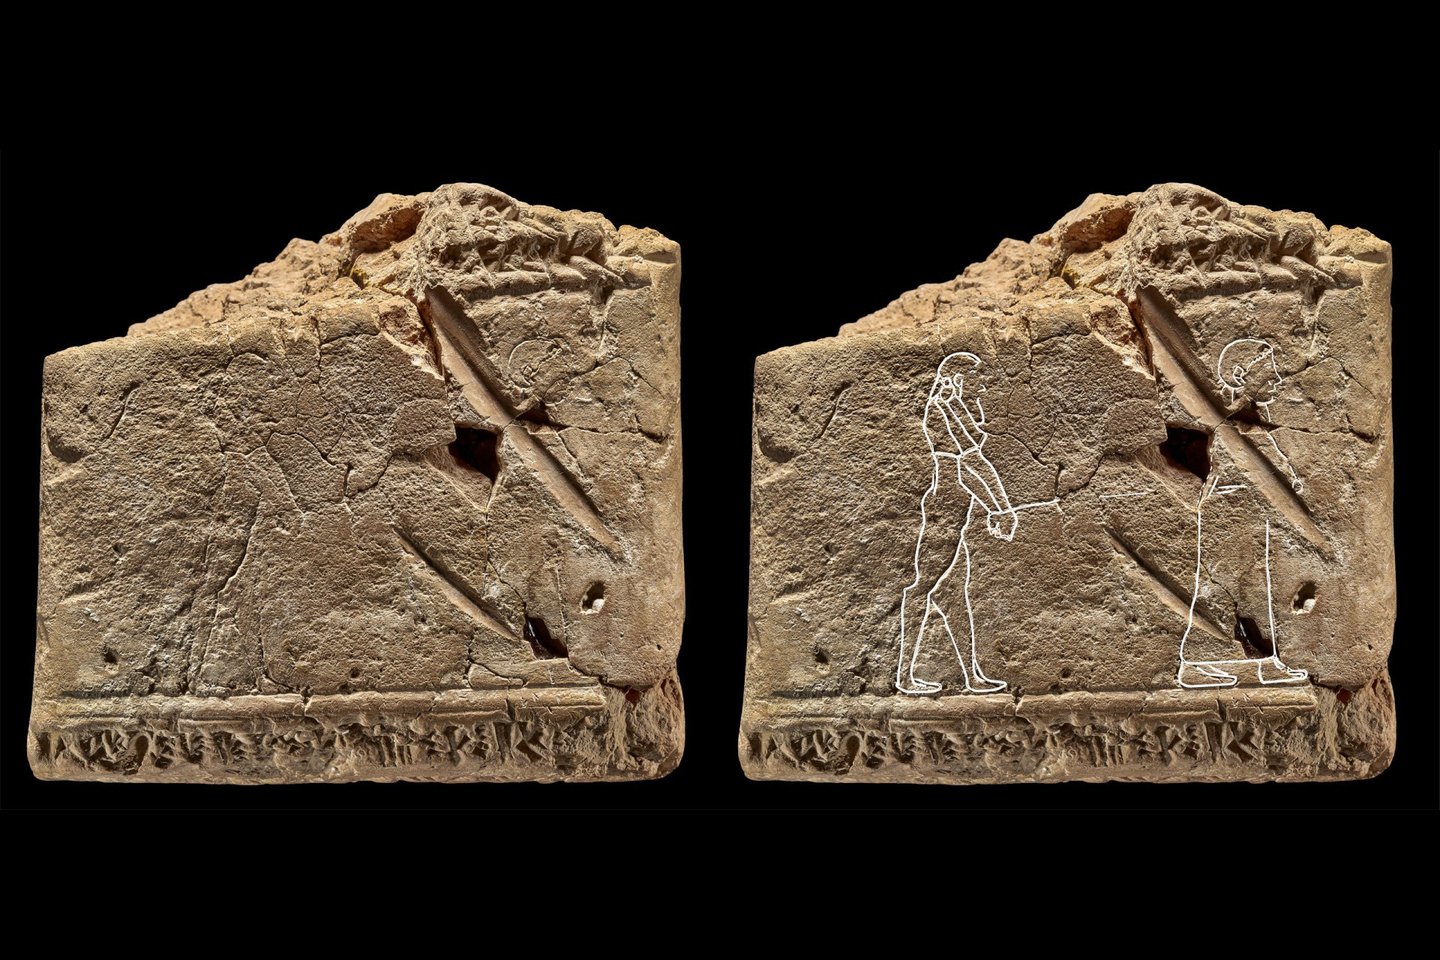  Vos plika akimi įžiūrimą graviūrą ant 3500 metų senumo Babilono plokštelės muziejaus kuratorius identifikavo kaip seniausią žinomą vaiduoklio atvaizdą.<br> Britų muziejaus nuotr.